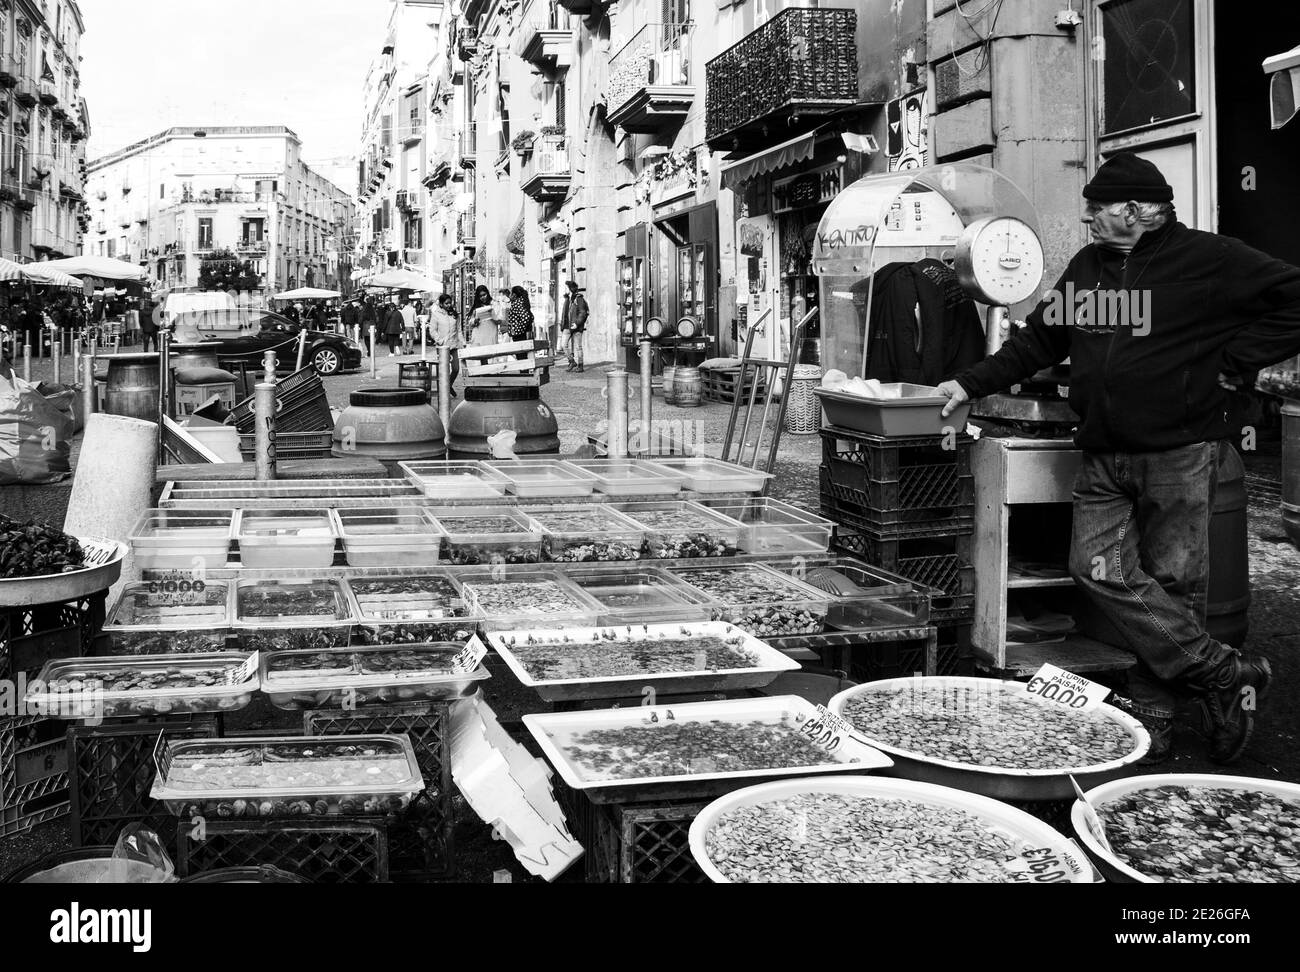 NAPOLI - 15 DICEMBRE 2019: Mercato di strada. Uomo anziano che vende frutti di mare - varietà di vongole fresche, crostacei, ecc Black bianco foto. Foto Stock